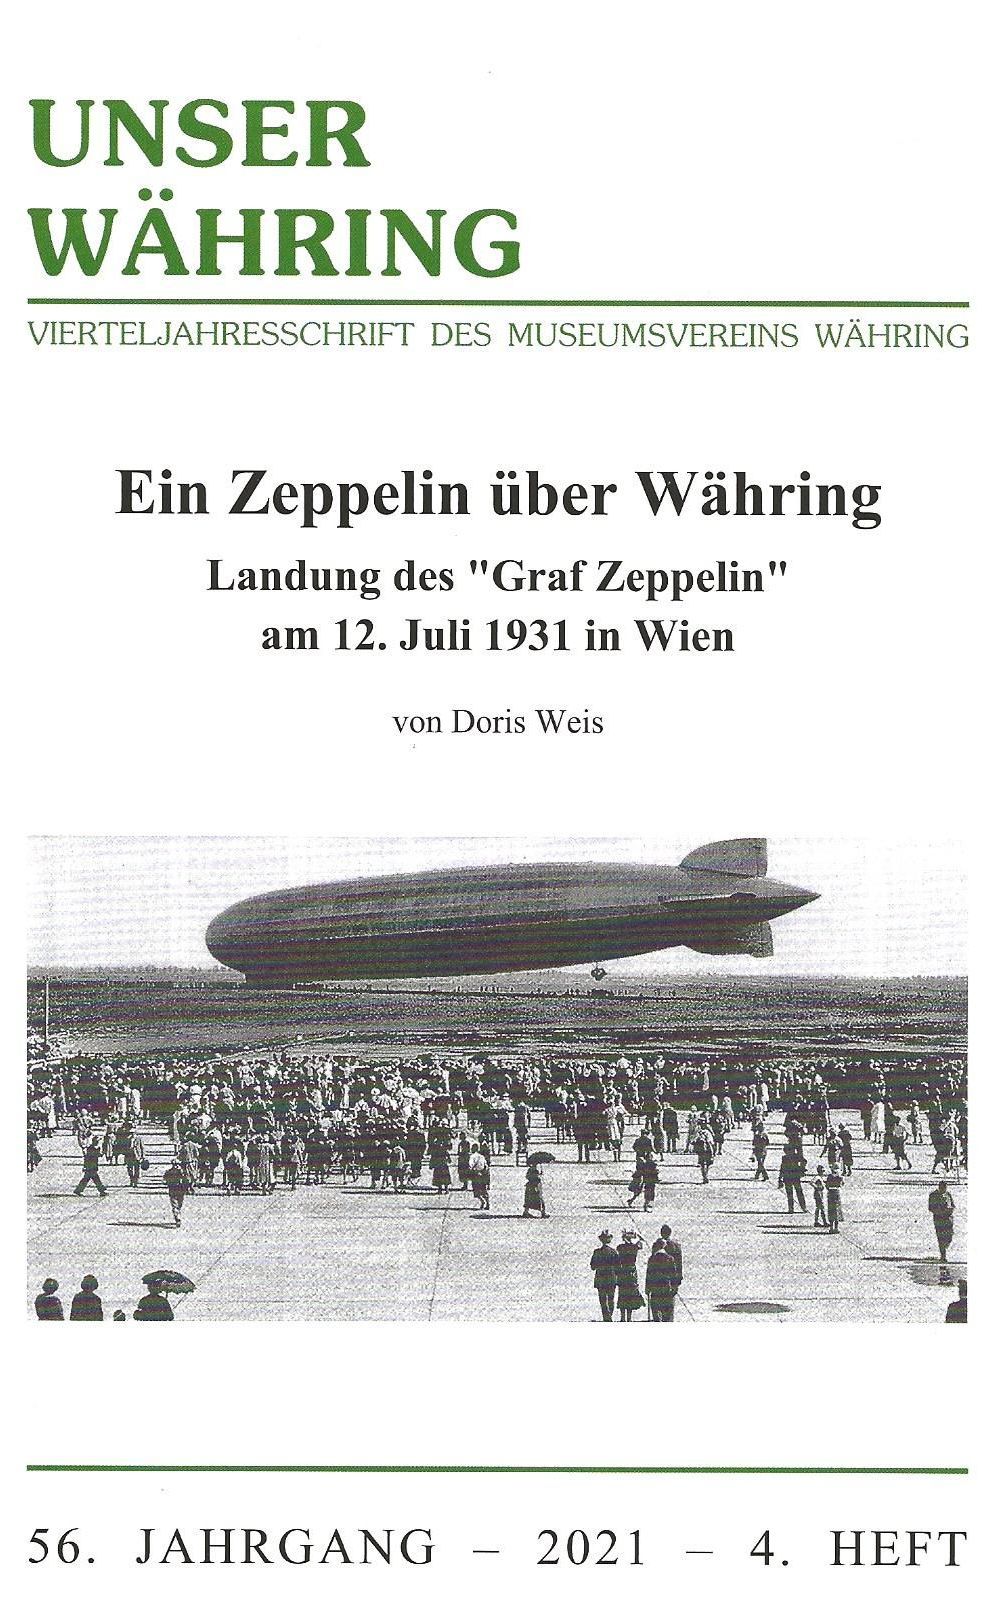 Publikation: Ein Zeppelin über Währing. Landung des "Graf Zeppelin" am 12.7.1931 in Wien, Bezirksmuseum Währing